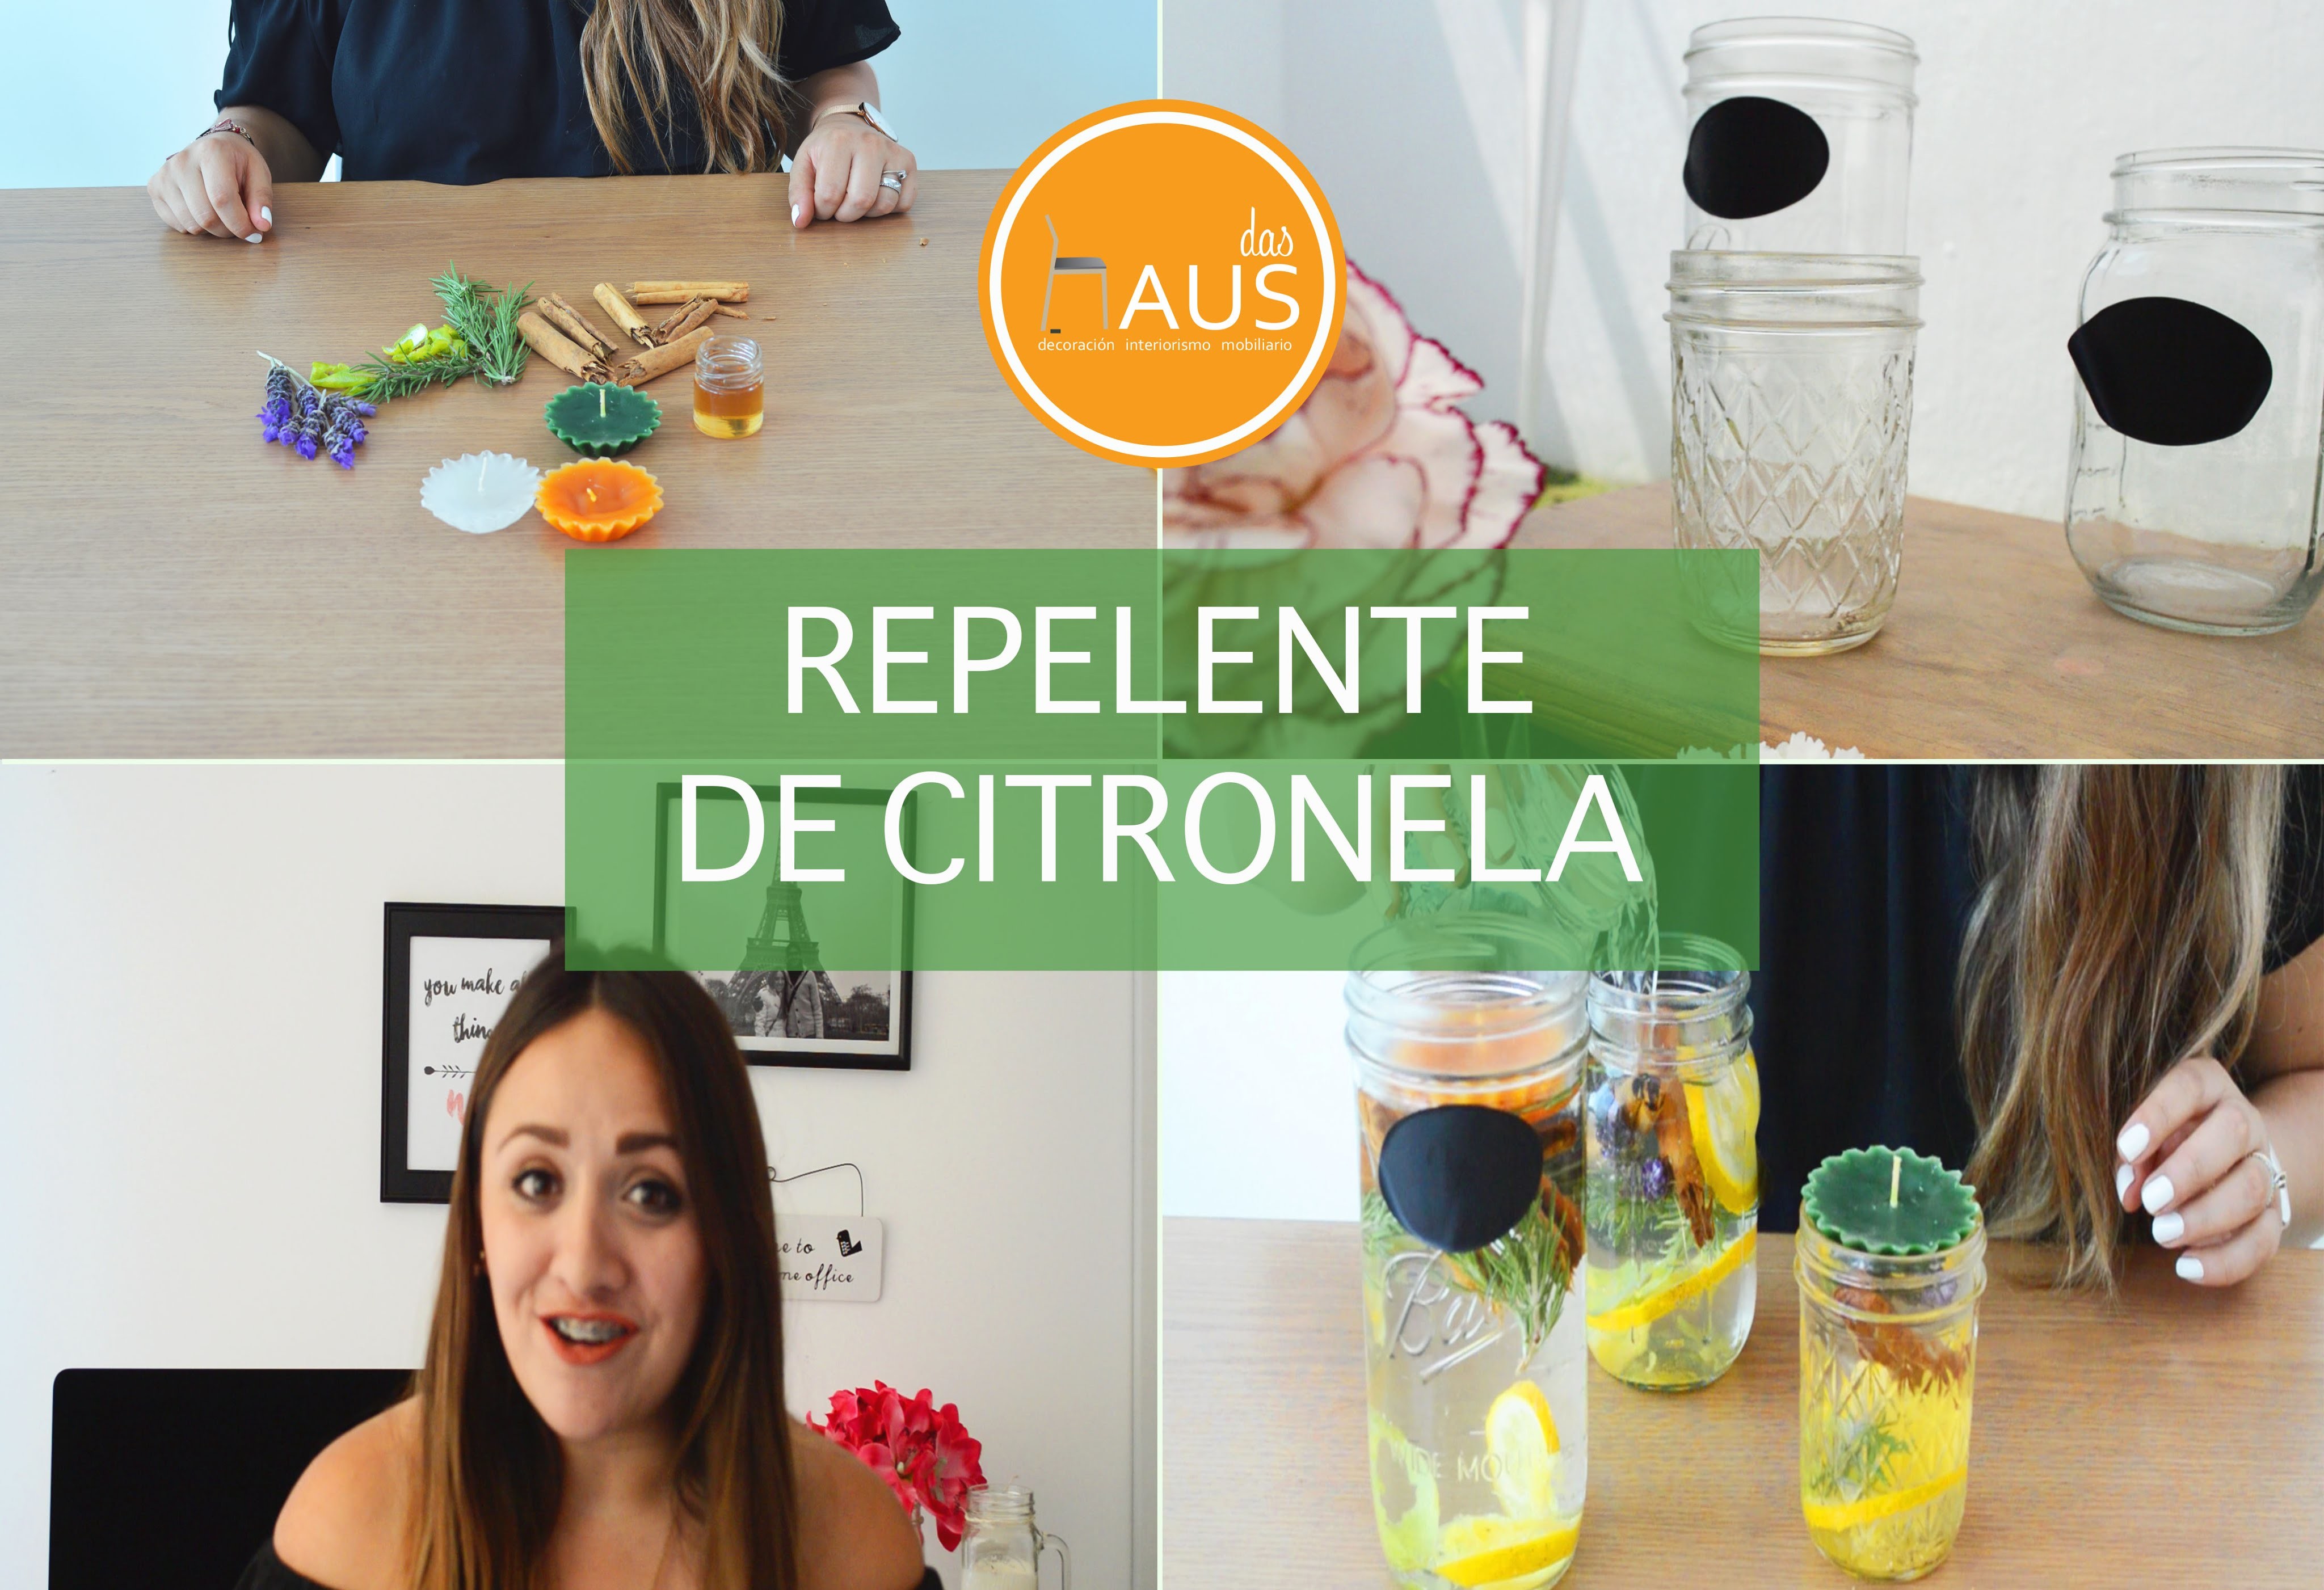 DIY | REPELENTE DE CITRONELA | DASHAUS